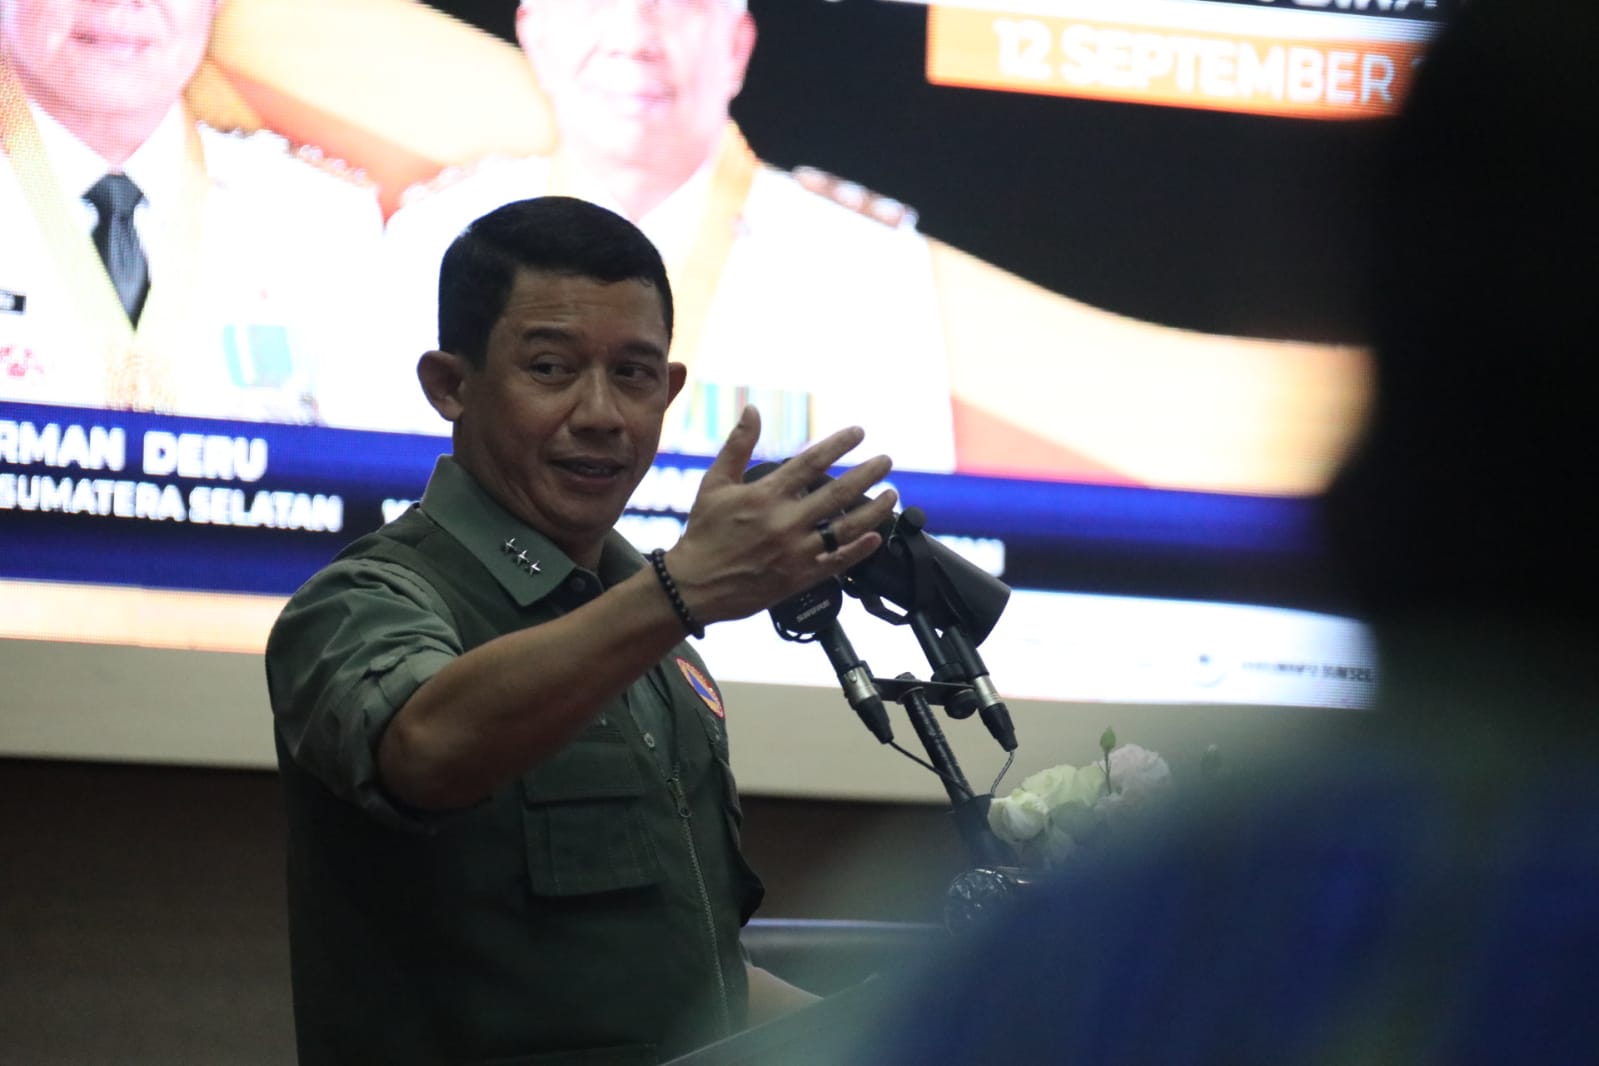 Kepala BNPB Letjen TNI Suharyanto saat memberikan sambutan pada Rapat Koordinasi Penanganan Kebakaran Hutan dan Lahan di Kantor Gubernur Sumatera Selatan, Palembang, Sumatera Selatan pada Selasa (12/9).